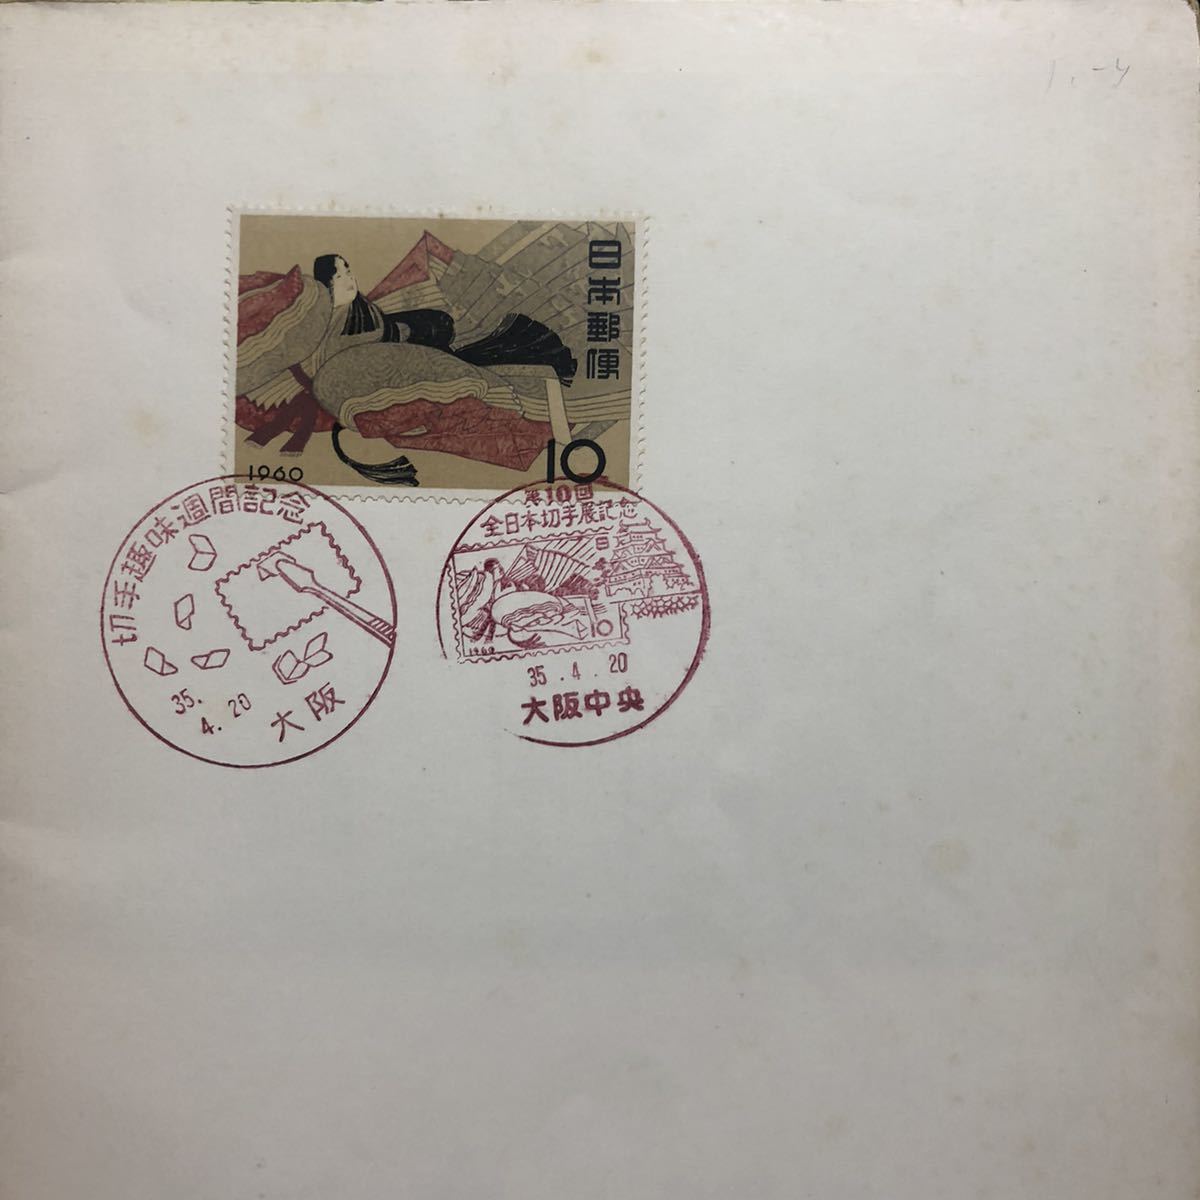 第10回全日本切手展 出品目録 全日本郵便切手普及協会 貨幣収集、切手収集